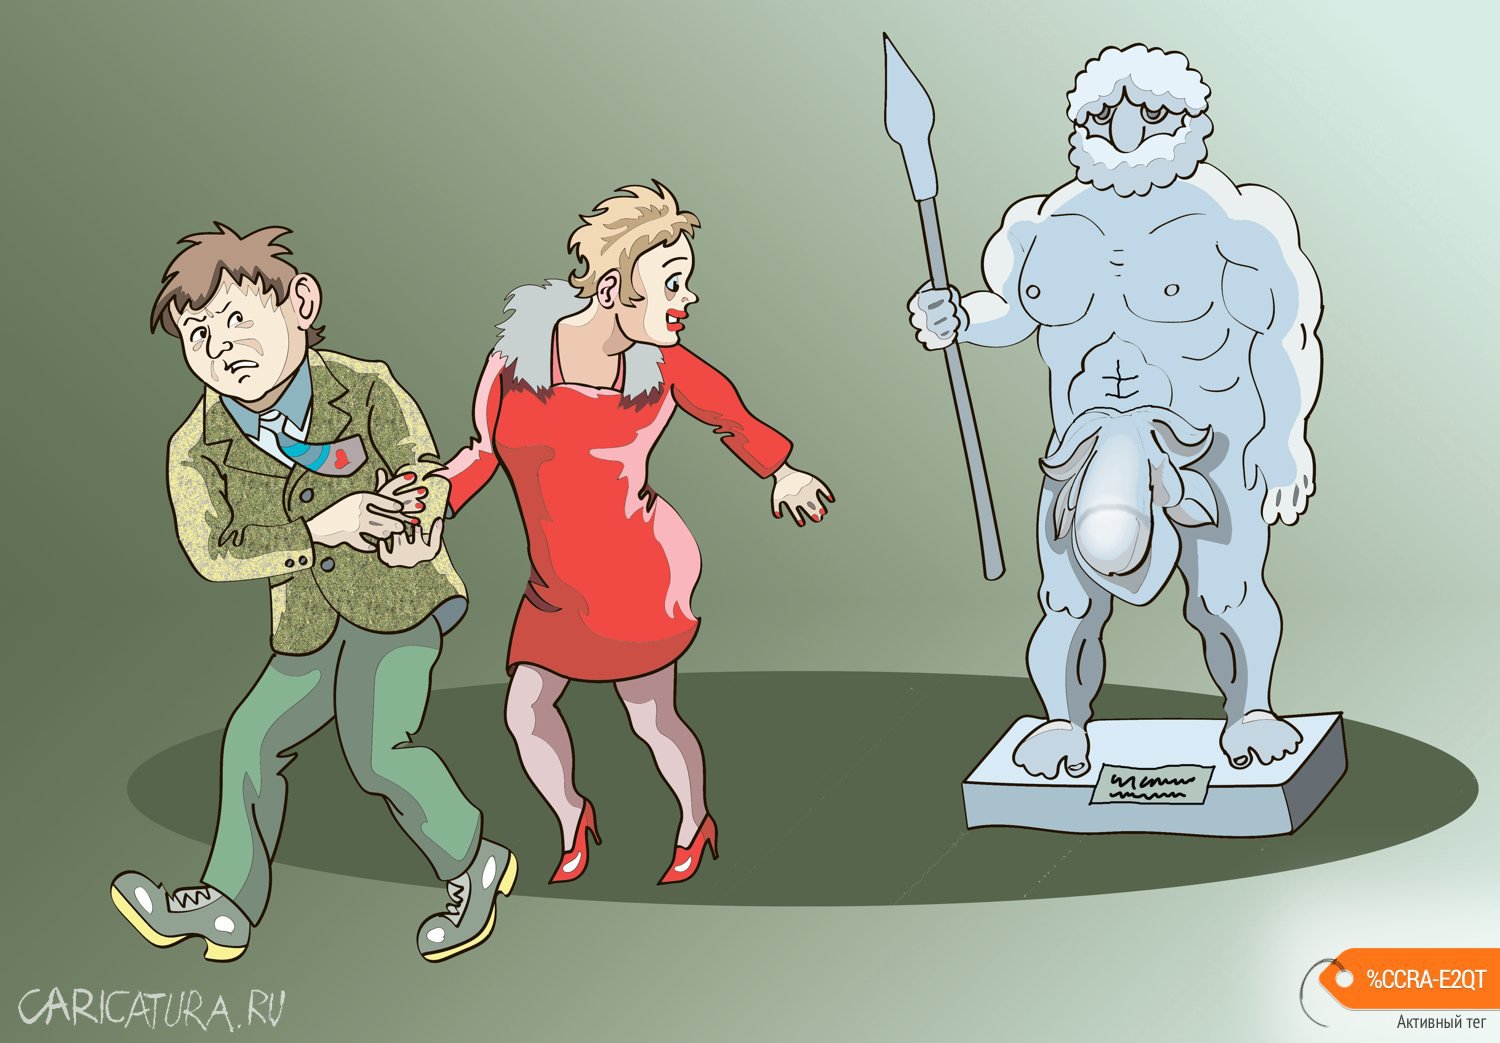 Карикатура "Статуя", Александр Максимович